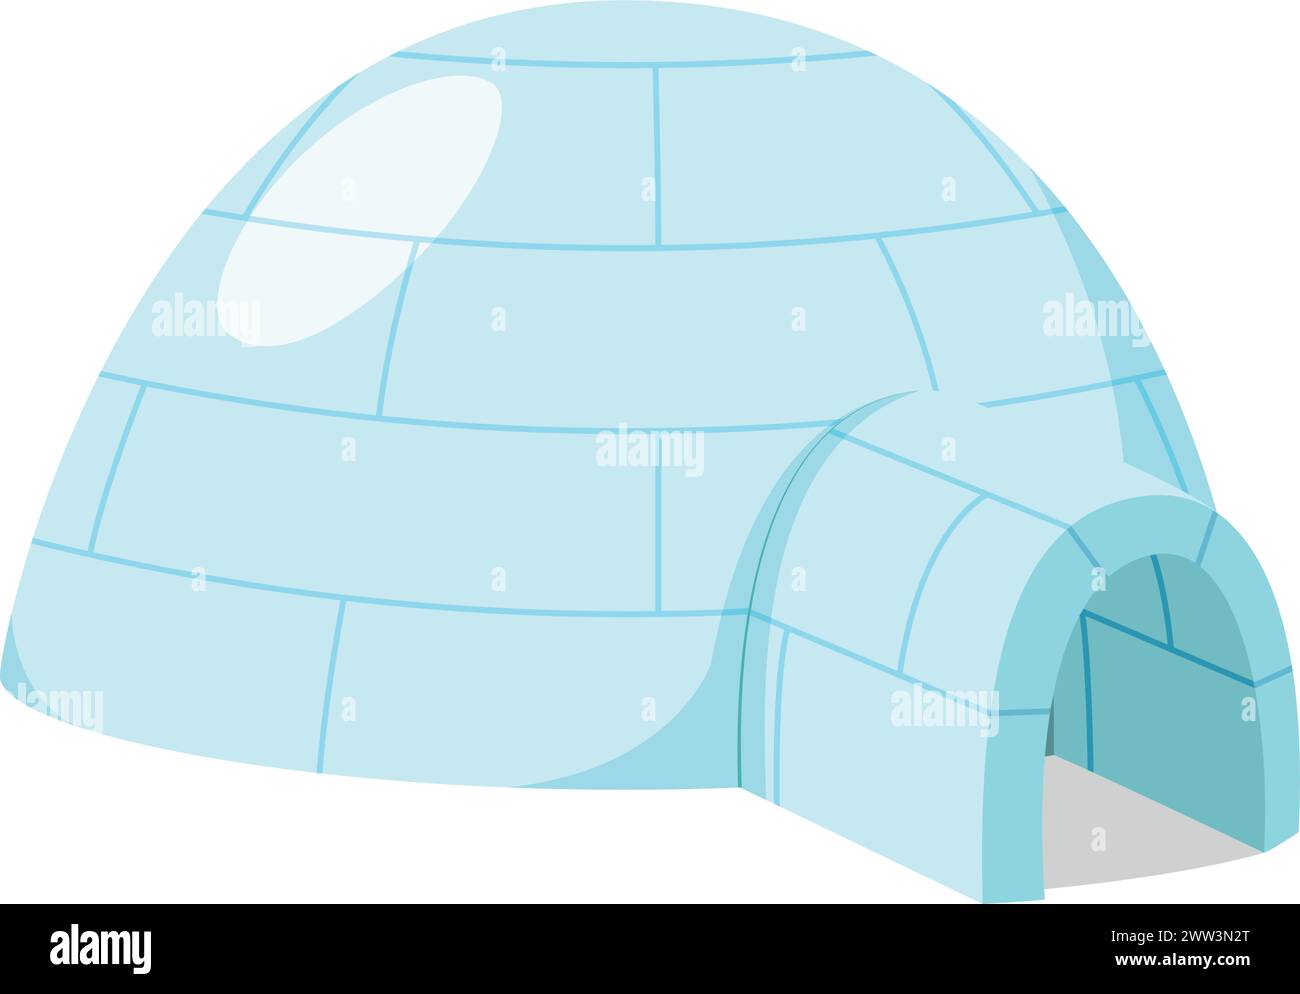 Illustration vectorielle d'un Igloo esquimau traditionnel dans le style de bande dessinée isolé sur fond blanc. Maisons traditionnelles de la série mondiale Illustration de Vecteur